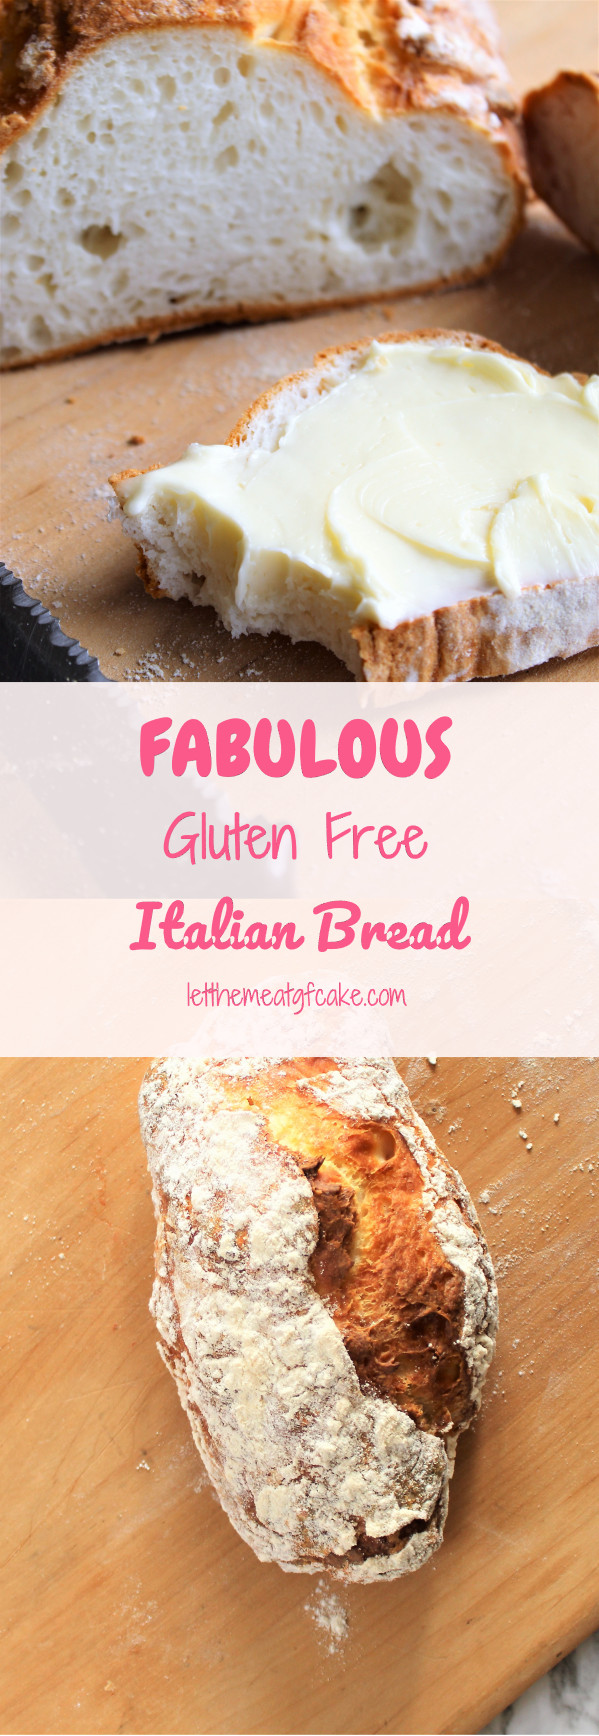 Gluten Free Italian Bread Recipe
 Fabulous Gluten Free Italian Bread Recipe